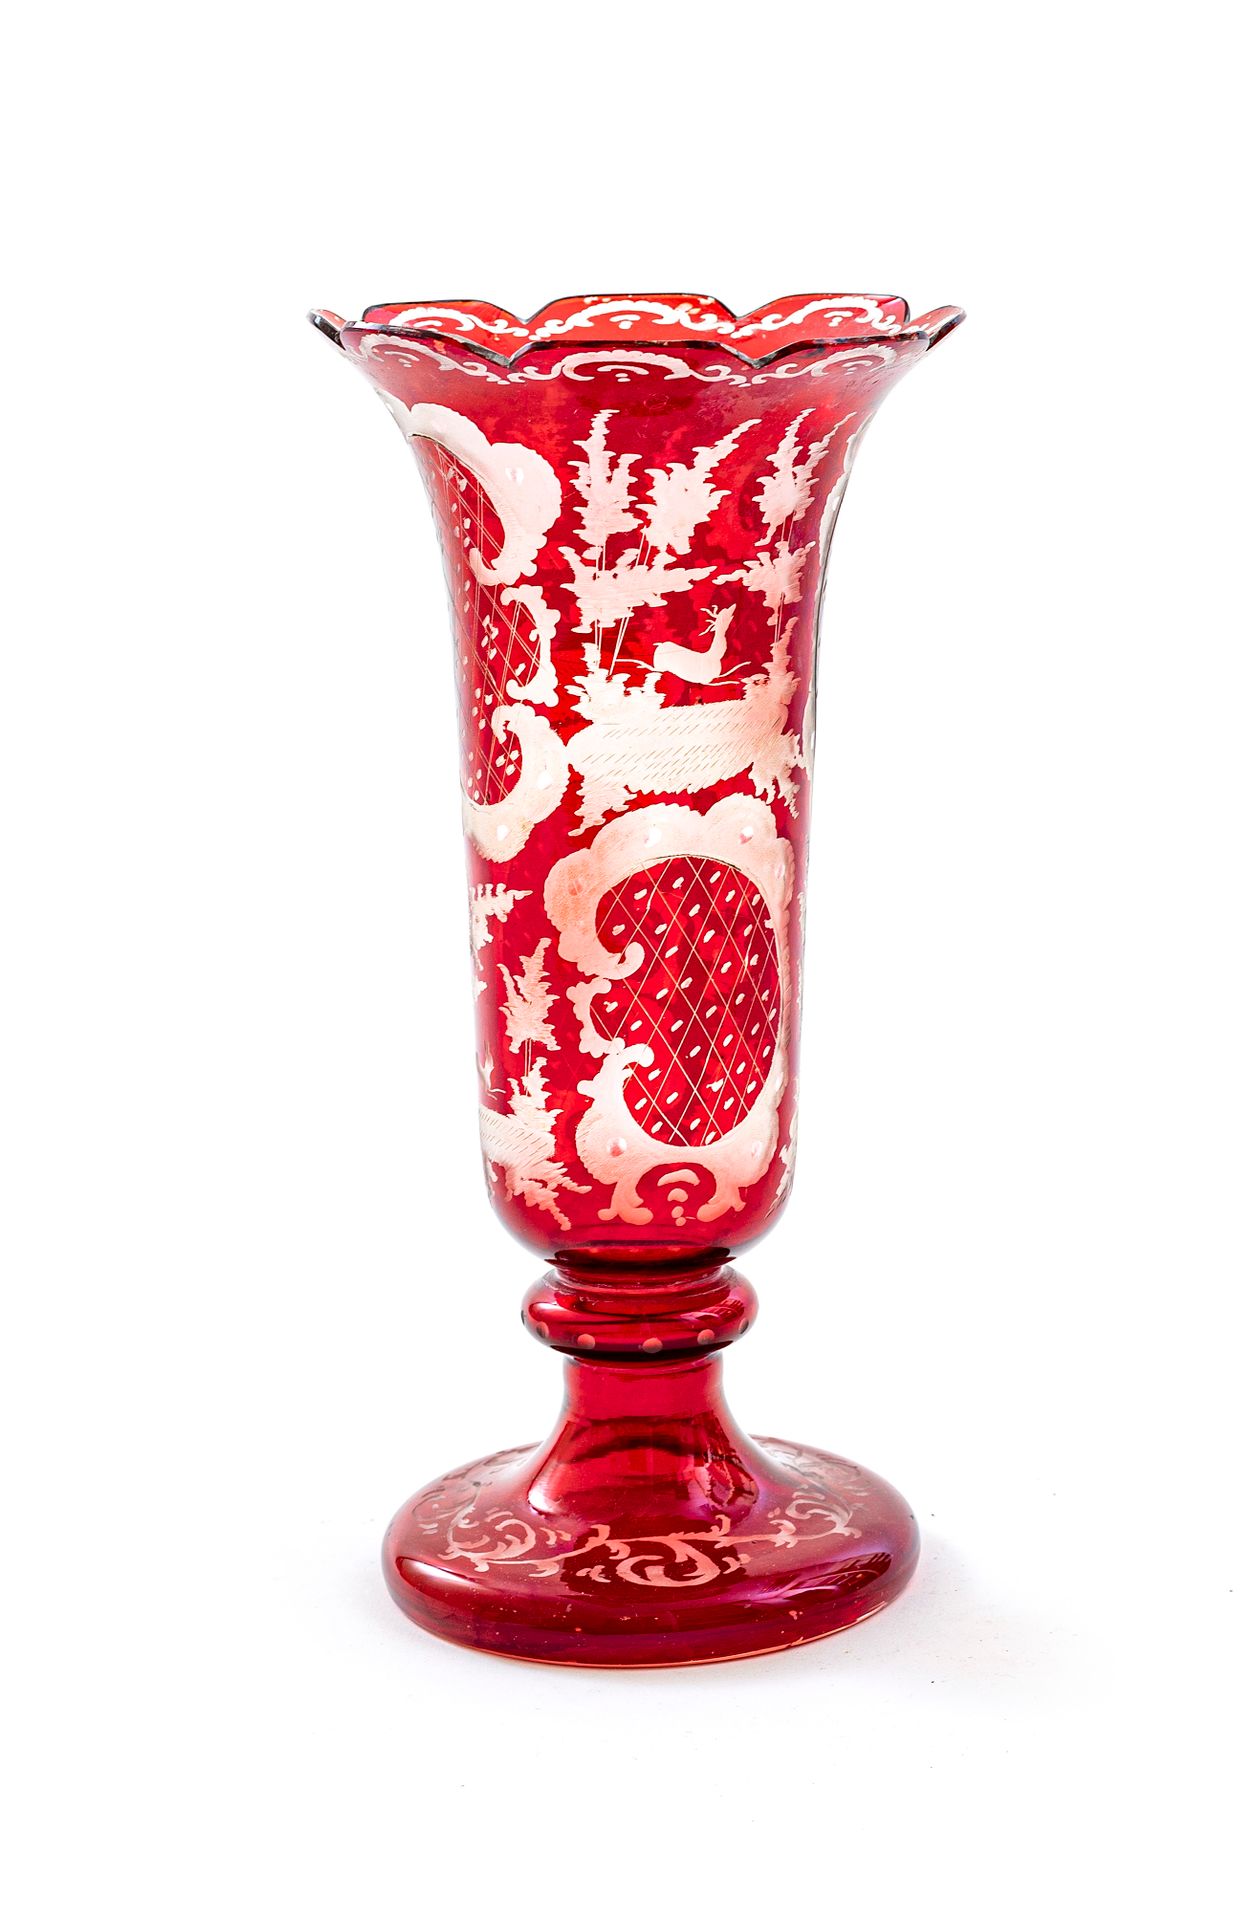 Null 波西米亚风格的水晶花瓶，基座上有喇叭形的颈部和红色色调的多叶领。

刻有运动中的动物轮子的装饰，与方形的子弹交替出现

19世纪末和20世纪初

高度&hellip;